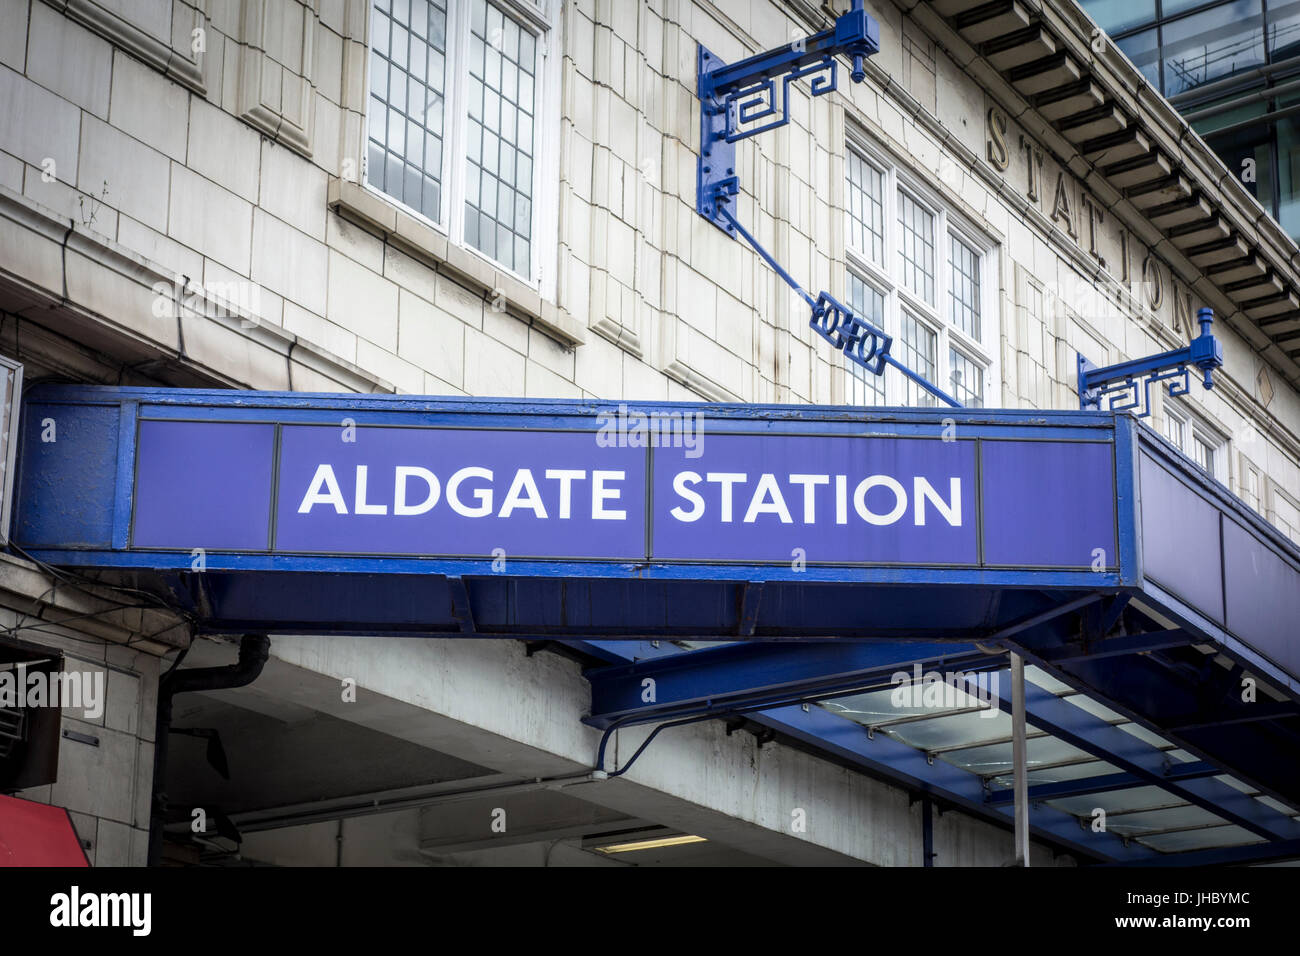 Aldgate London Underground Station sign, London, UK Stock Photo